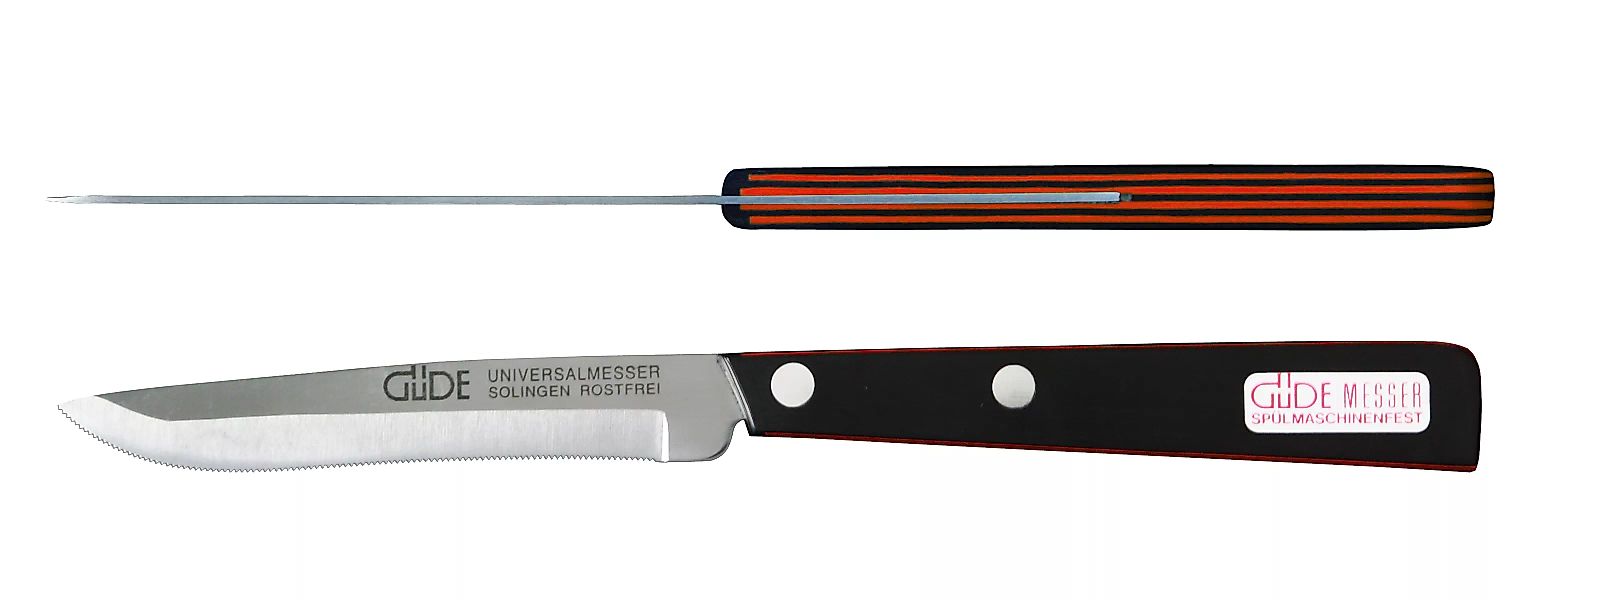 Güde Universalmesser 10 cm - Edelstahl - schwarz-rotem Griff günstig online kaufen